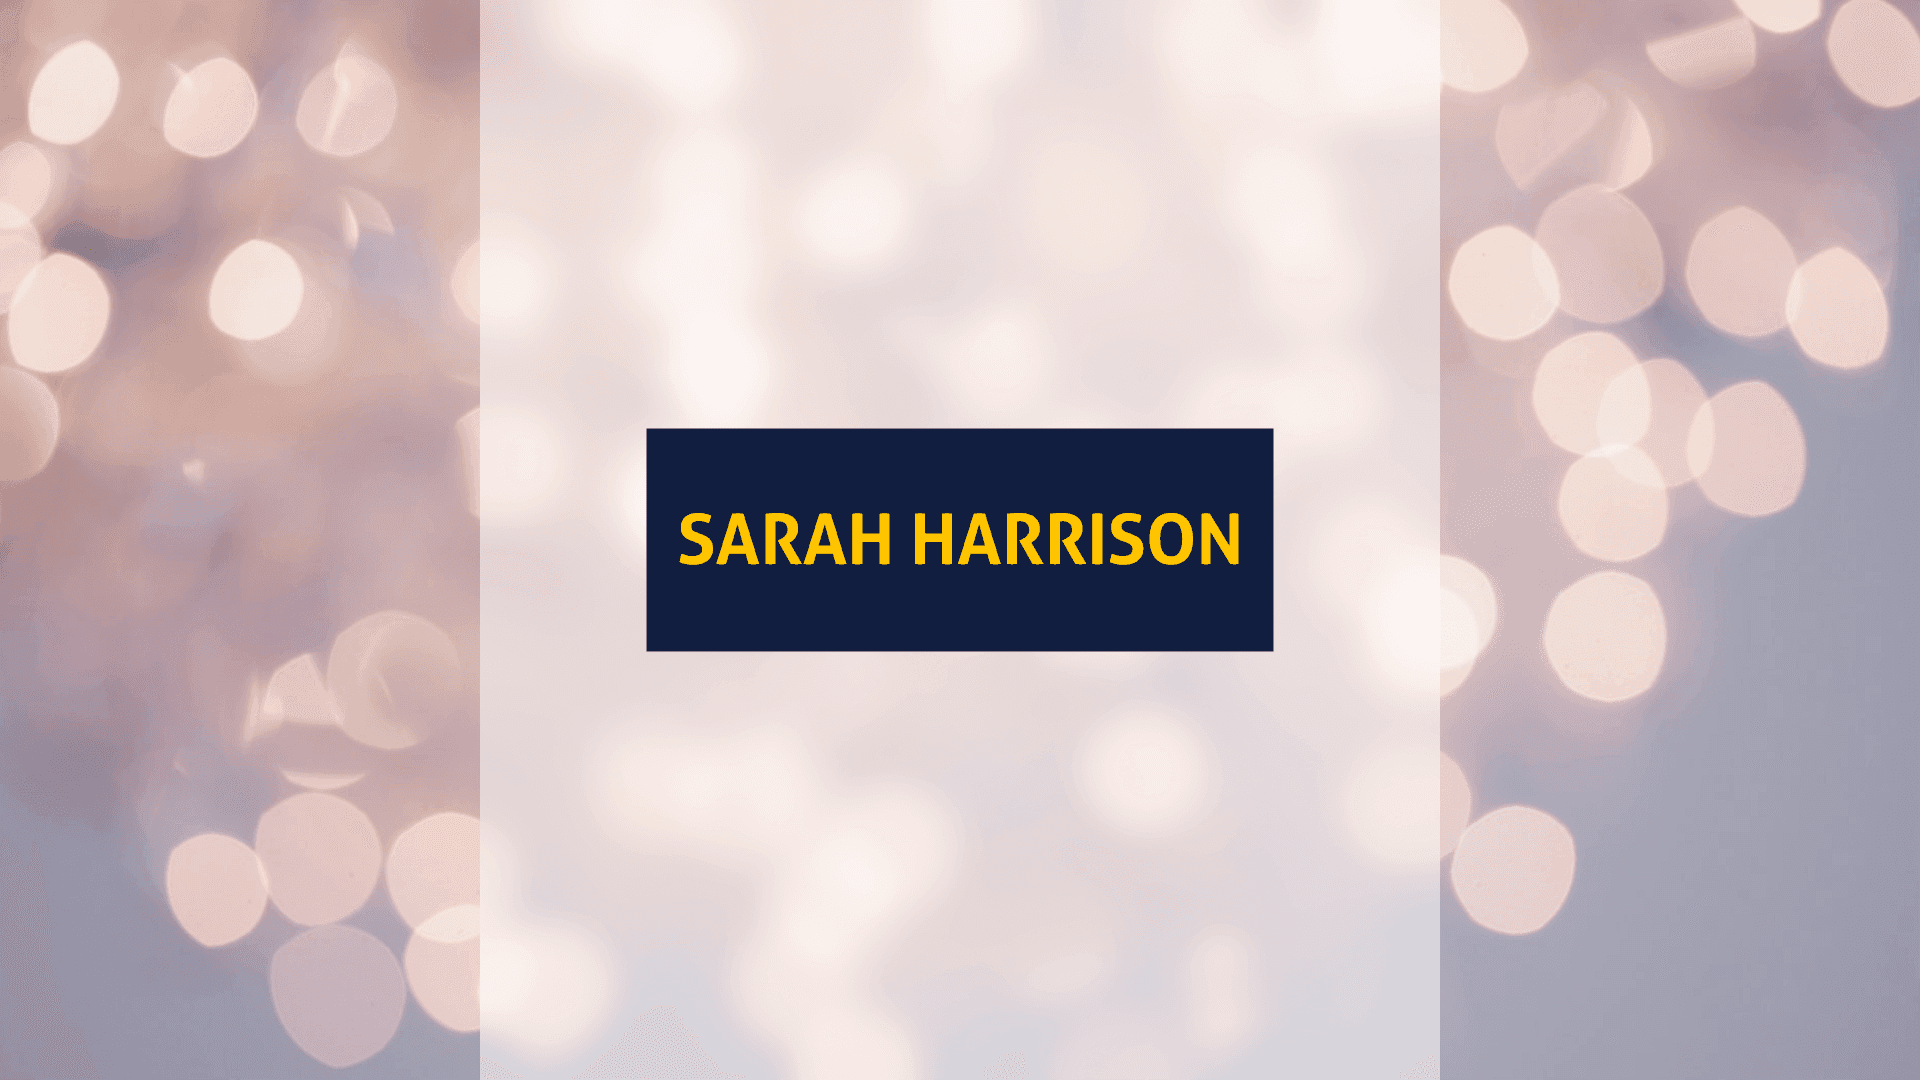 Titelbild für den Artikel: Sarah Harrison Box: Unboxing und Testbericht